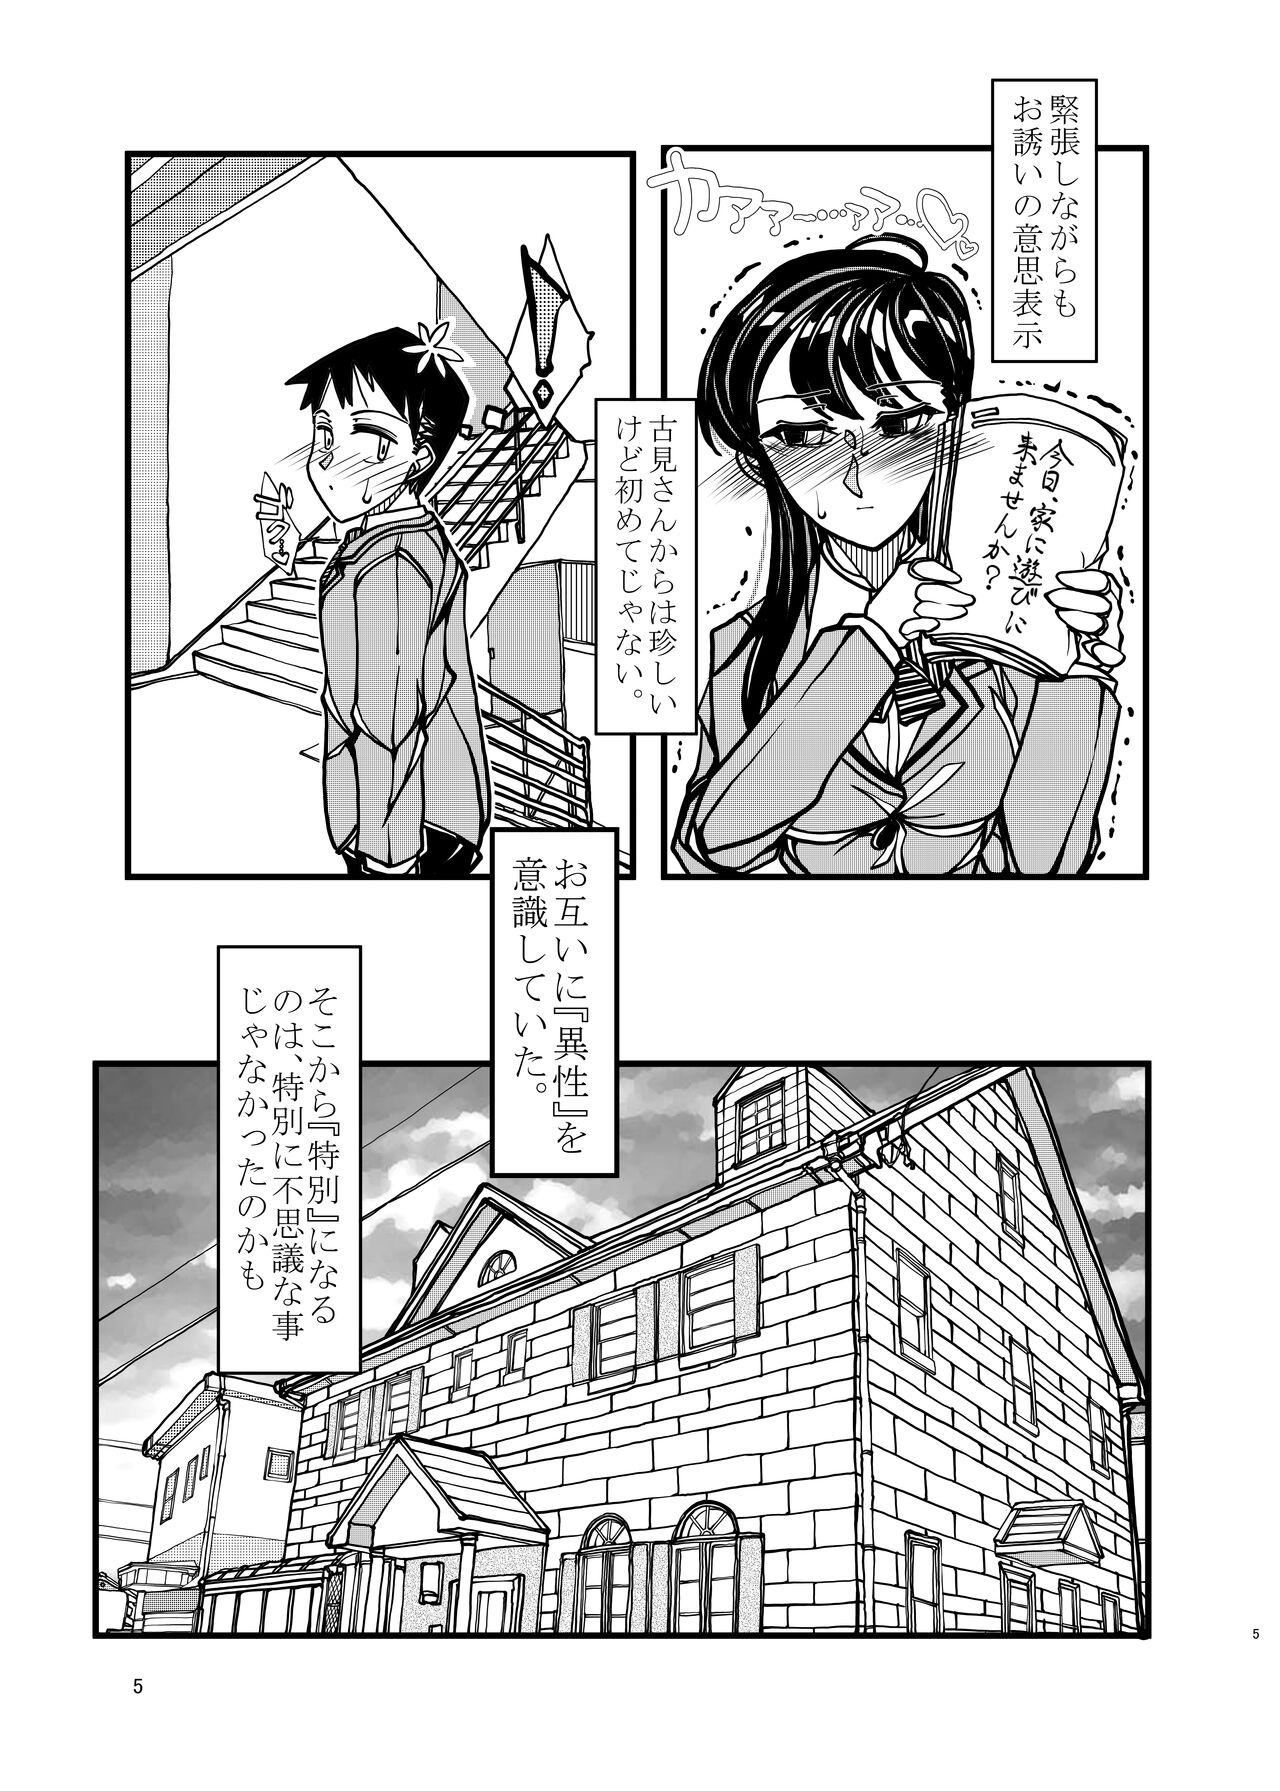 Gang Bang Komyushou na Kanojo to Mama - Komi san wa komyushou desu. Grande - Page 5